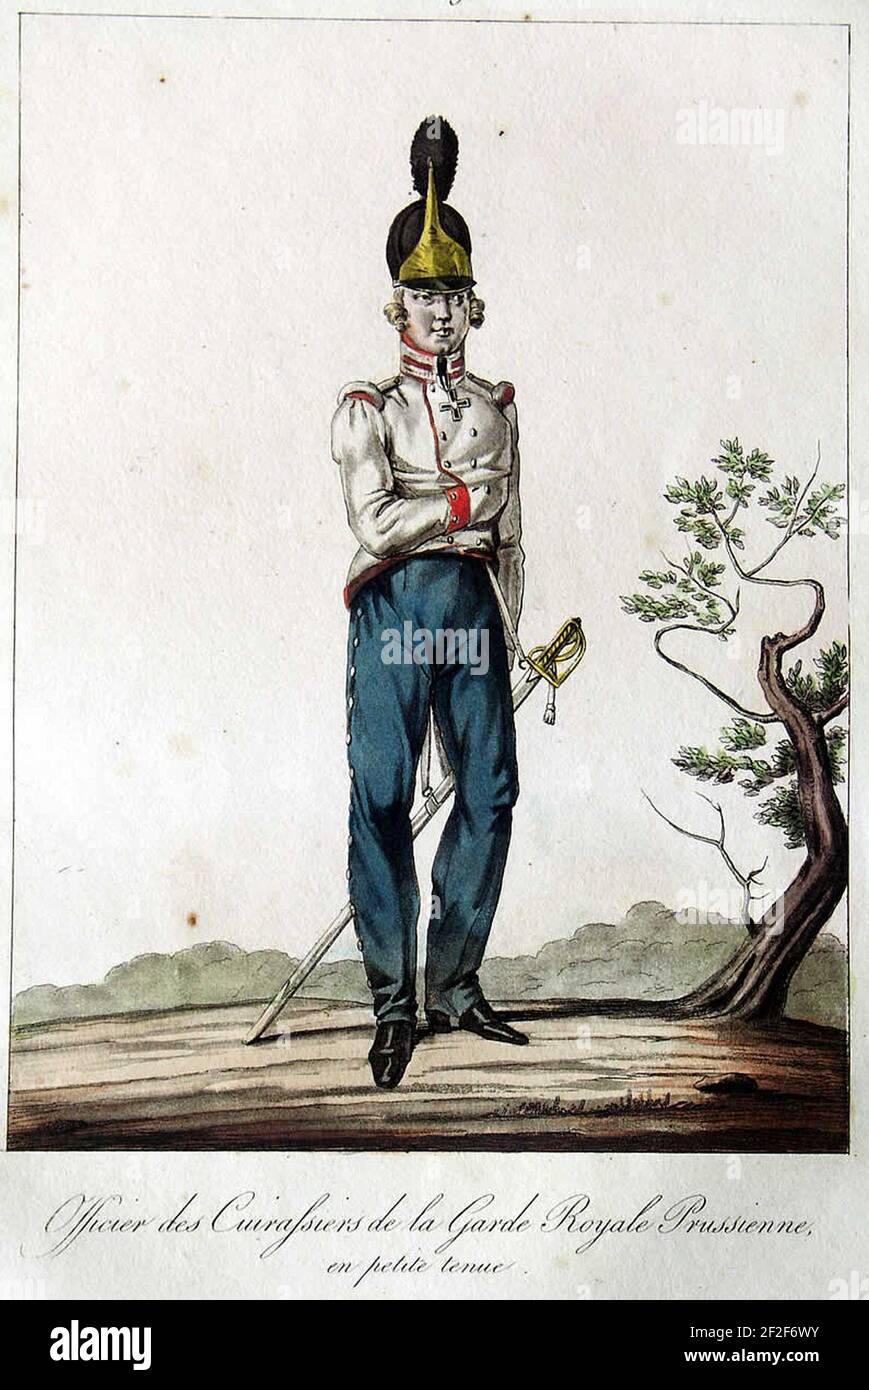 Preußische Gardekürassiere 1815 kl Uniform. Stock Photo